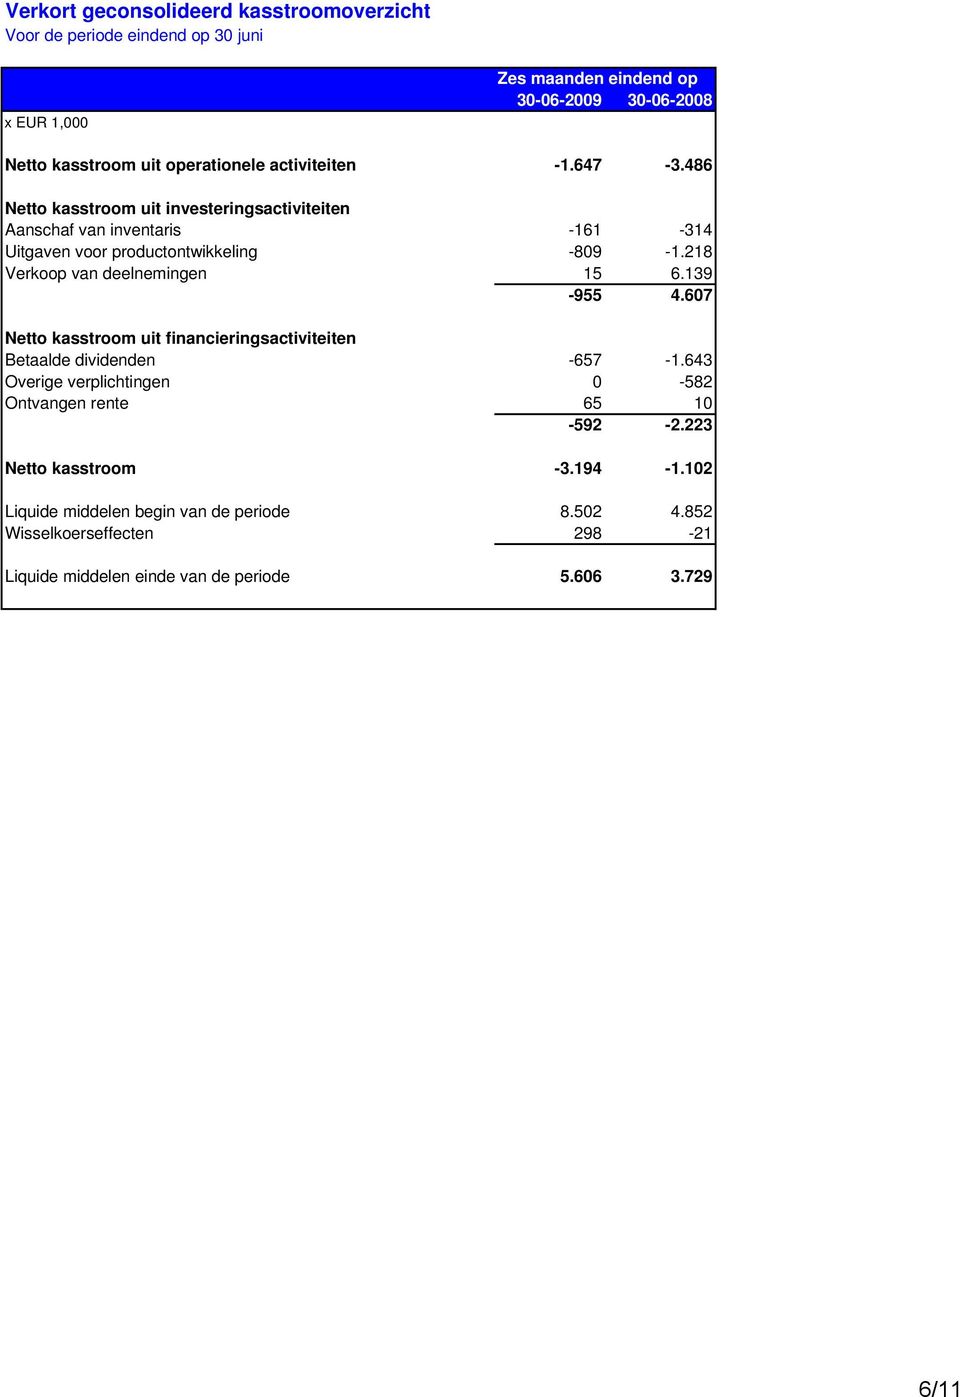 218 Verkoop van deelnemingen 15 6.139-955 4.607 Netto kasstroom uit financieringsactiviteiten Betaalde dividenden -657-1.